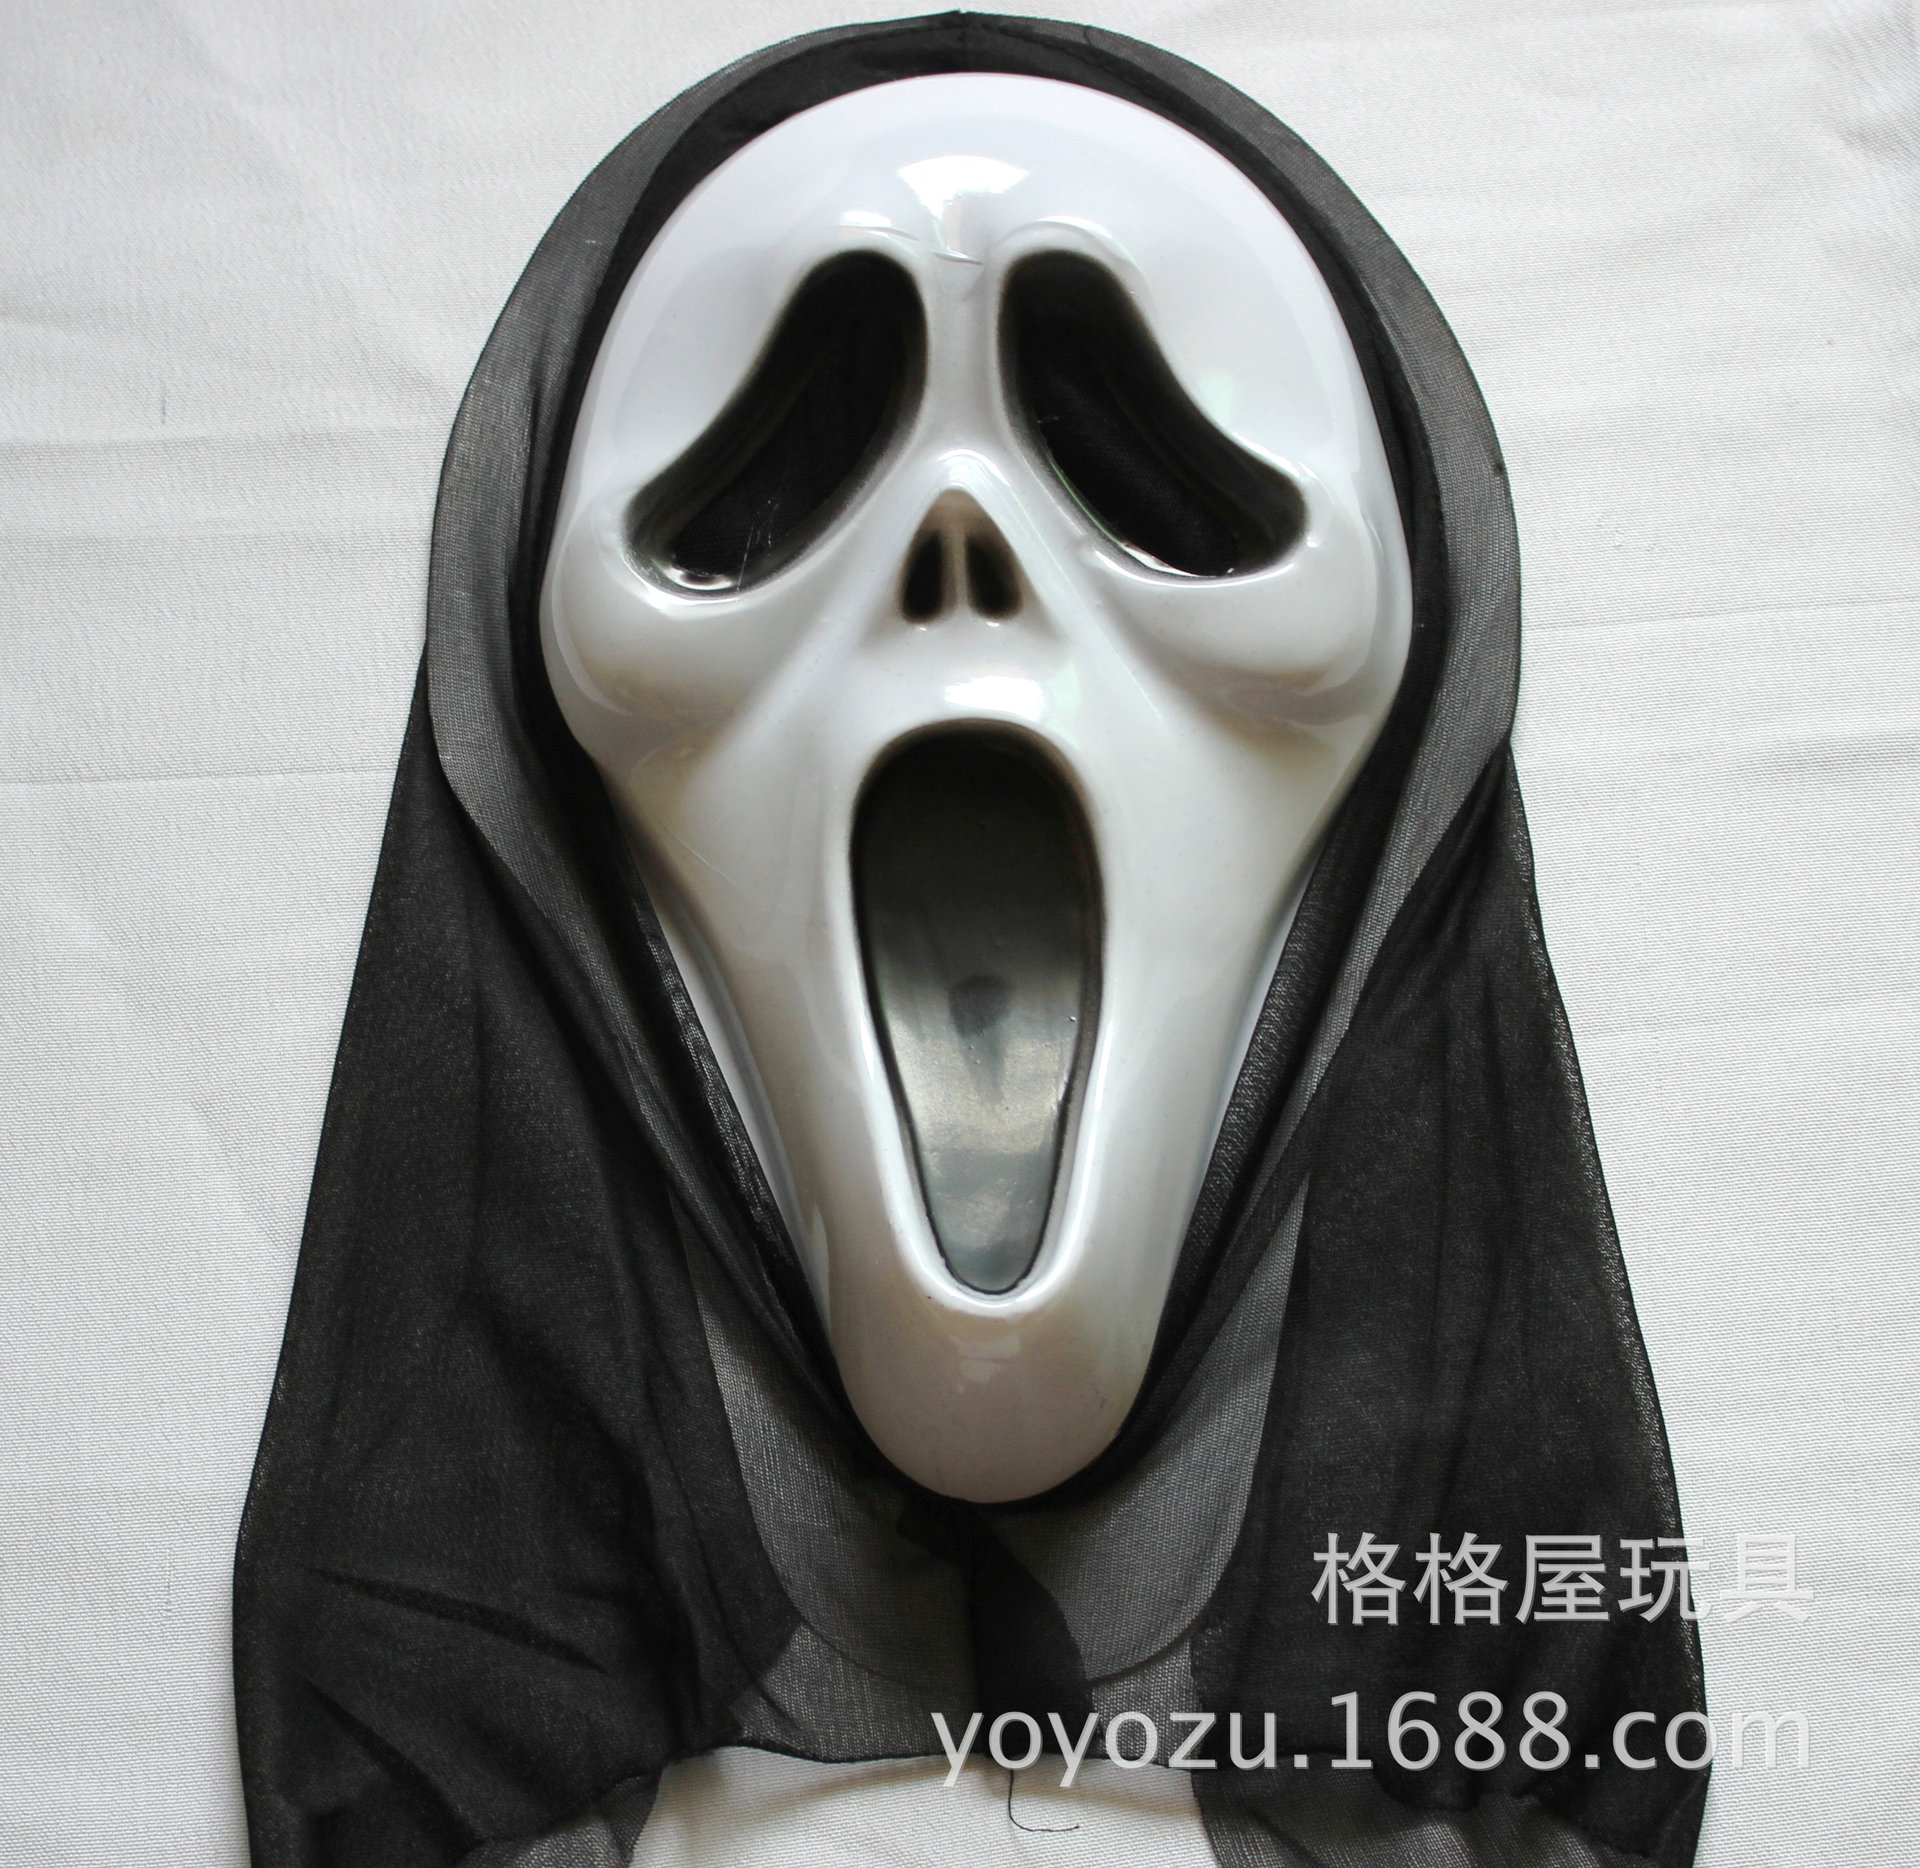 万圣节舞会派对面具节日演出恐怖鬼脸面具惊声尖叫面罩带舌头面具-阿里巴巴